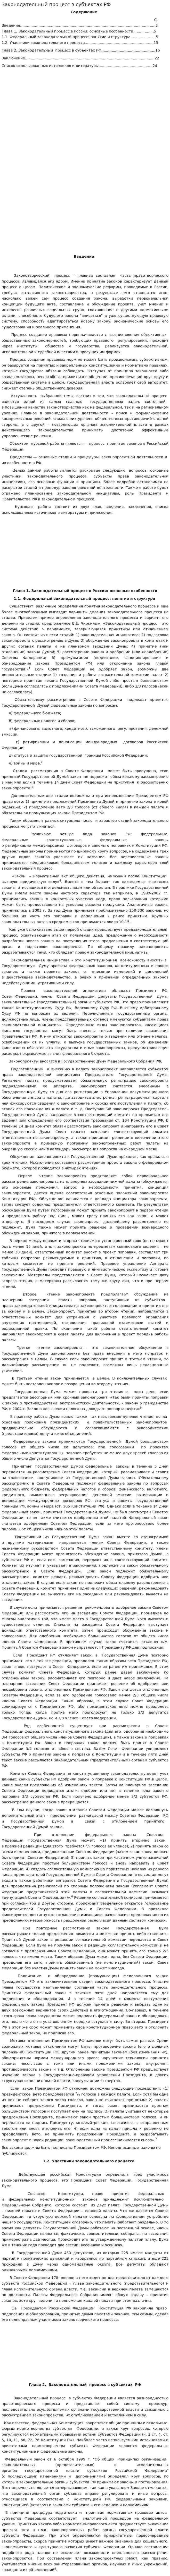 Законодательный процесс в субъектах РФ